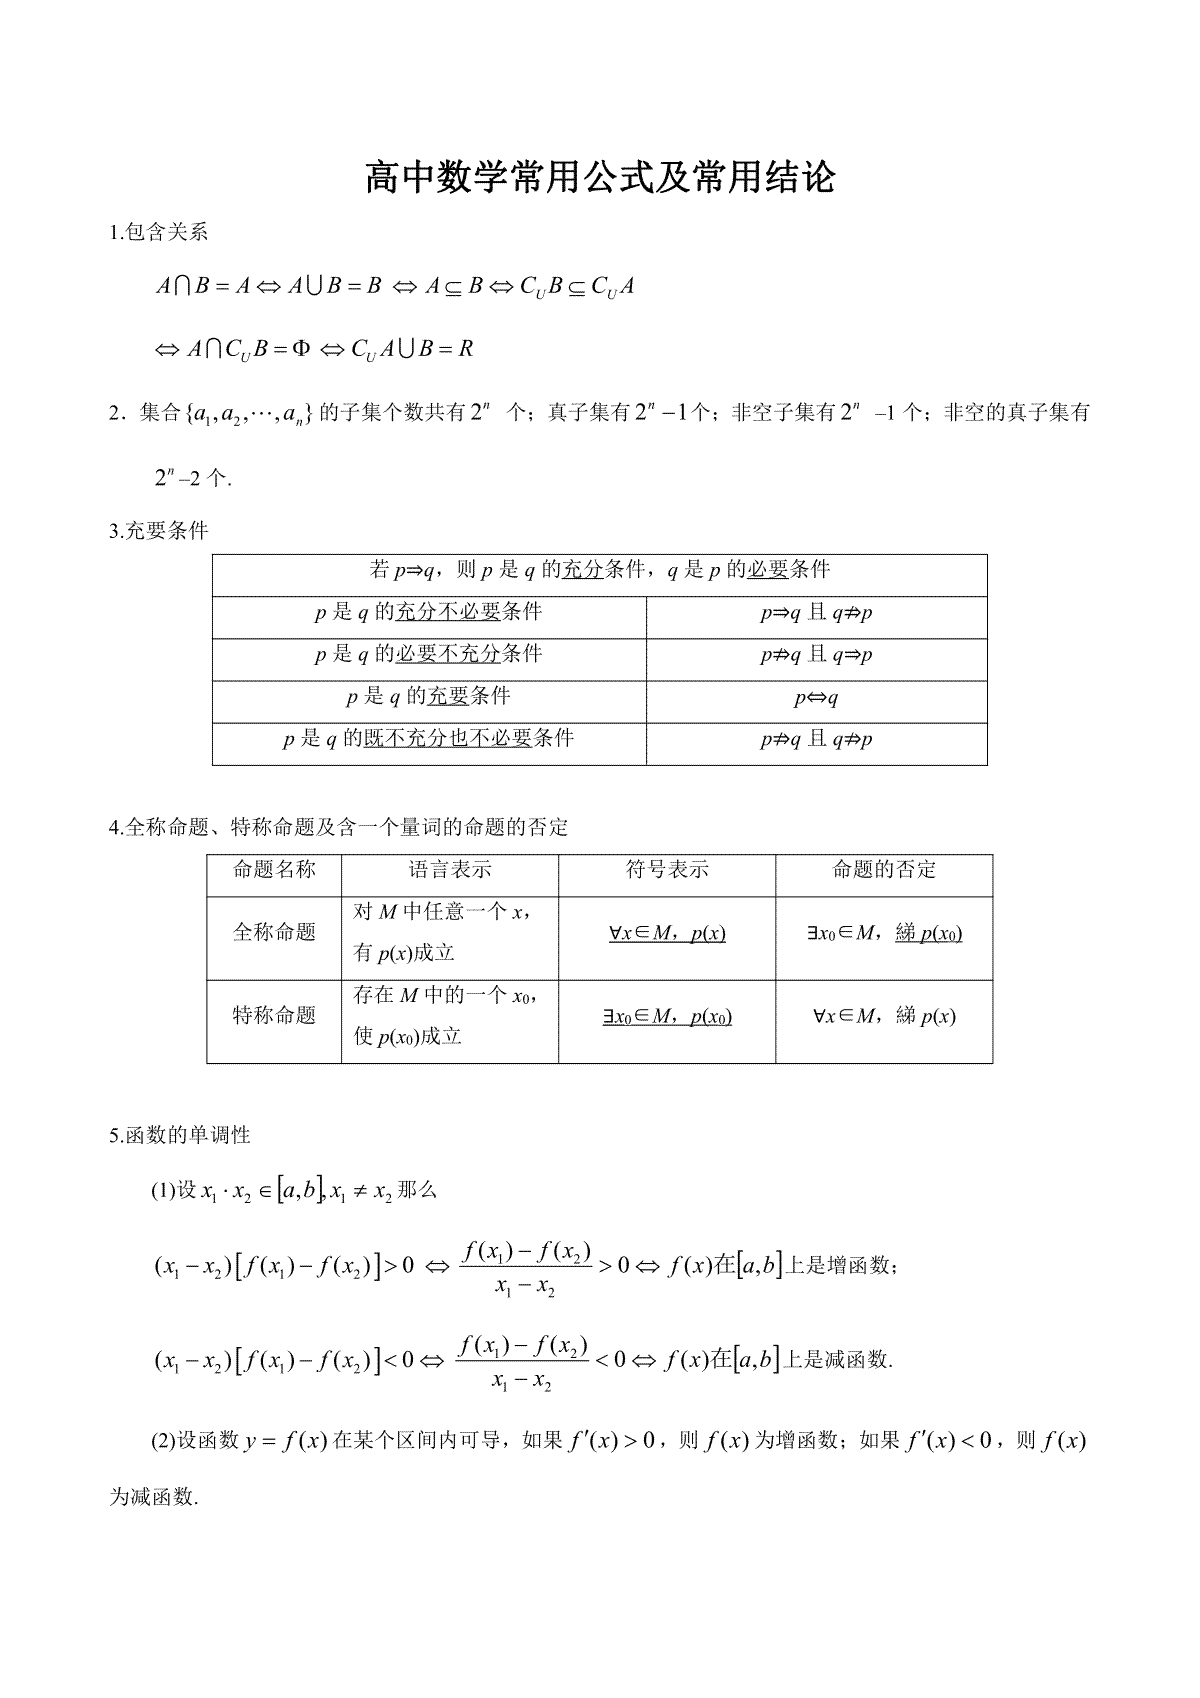 【口袋书】高考数学公式手册